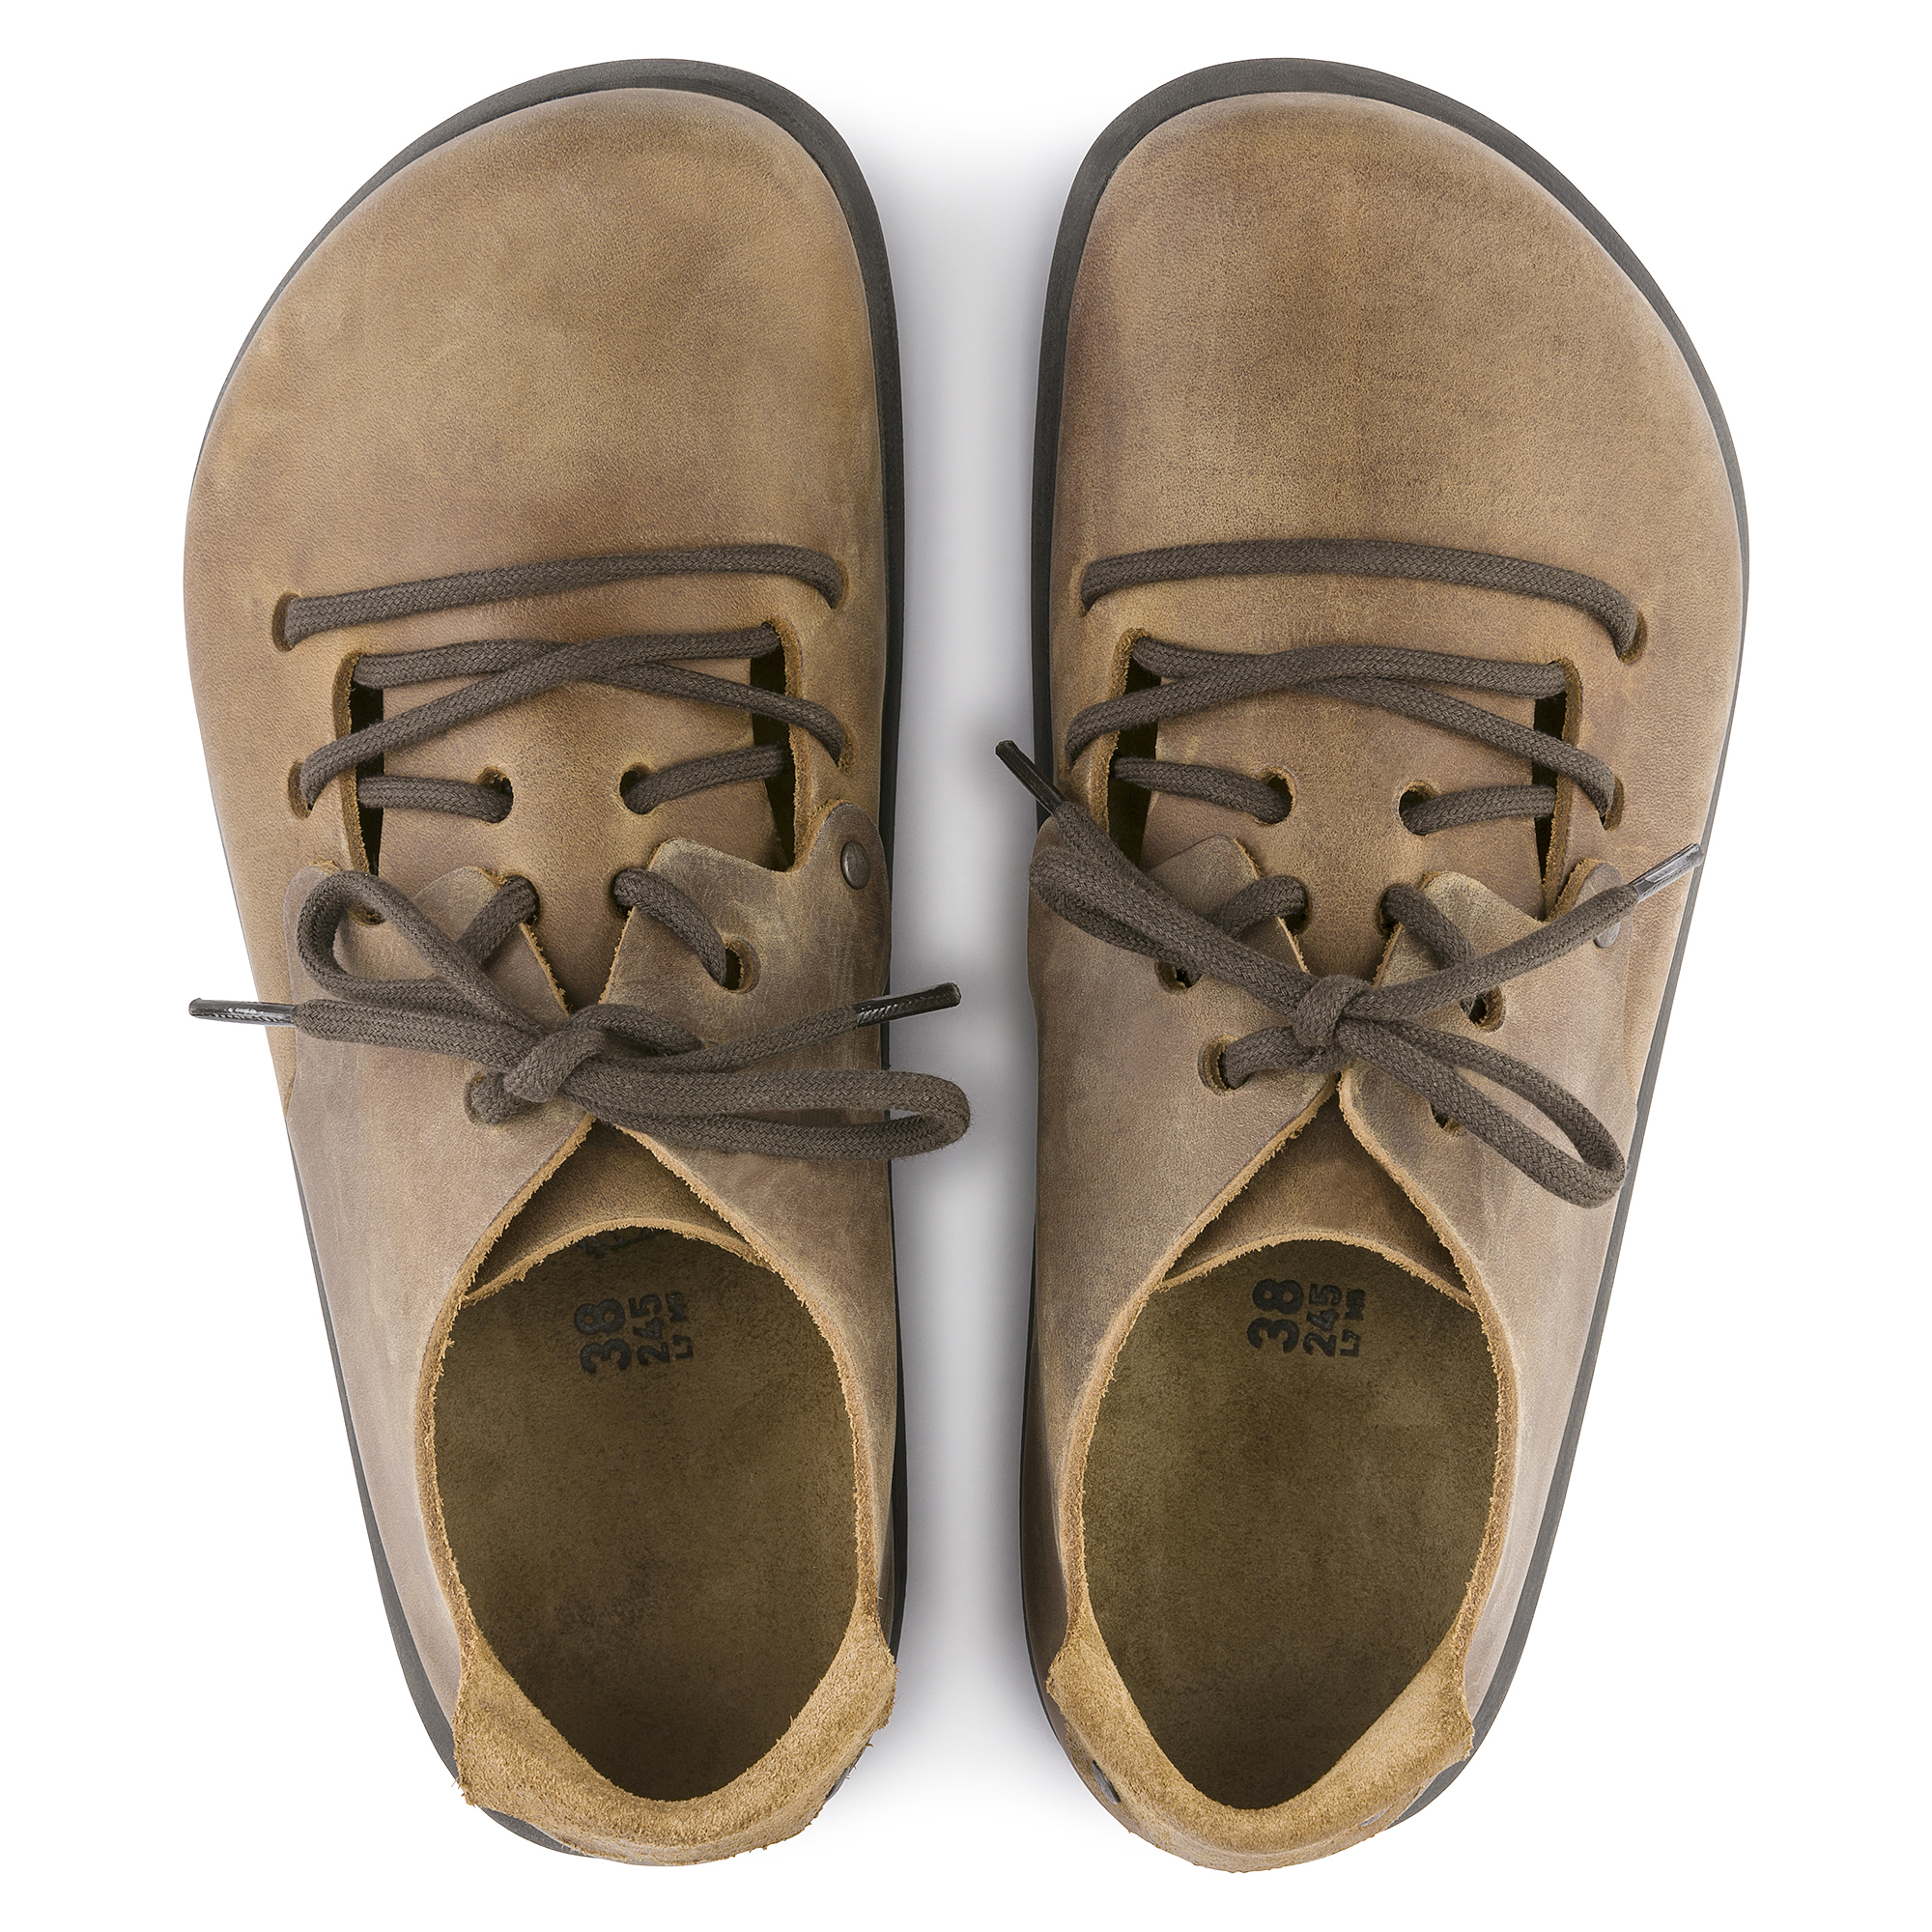 birkenstock montana shoes